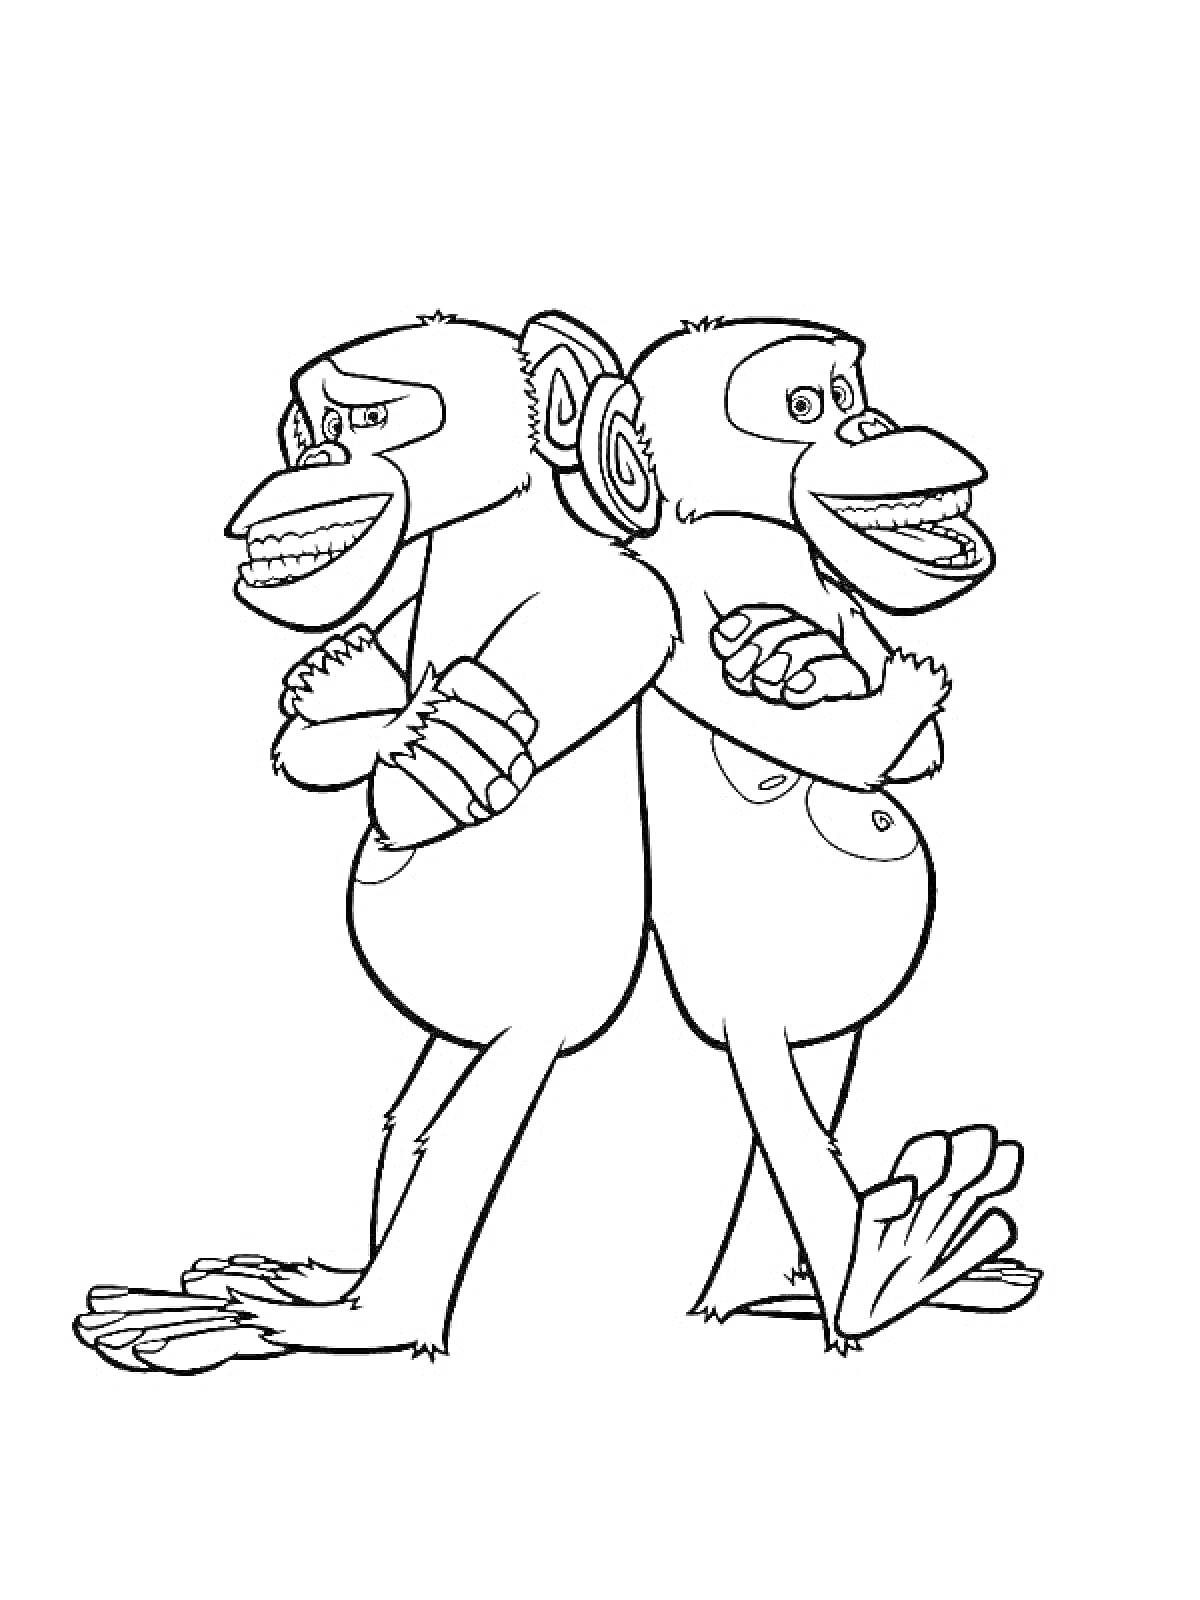 Два шимпанзе, стоящие спина к спине с перекрещенными руками